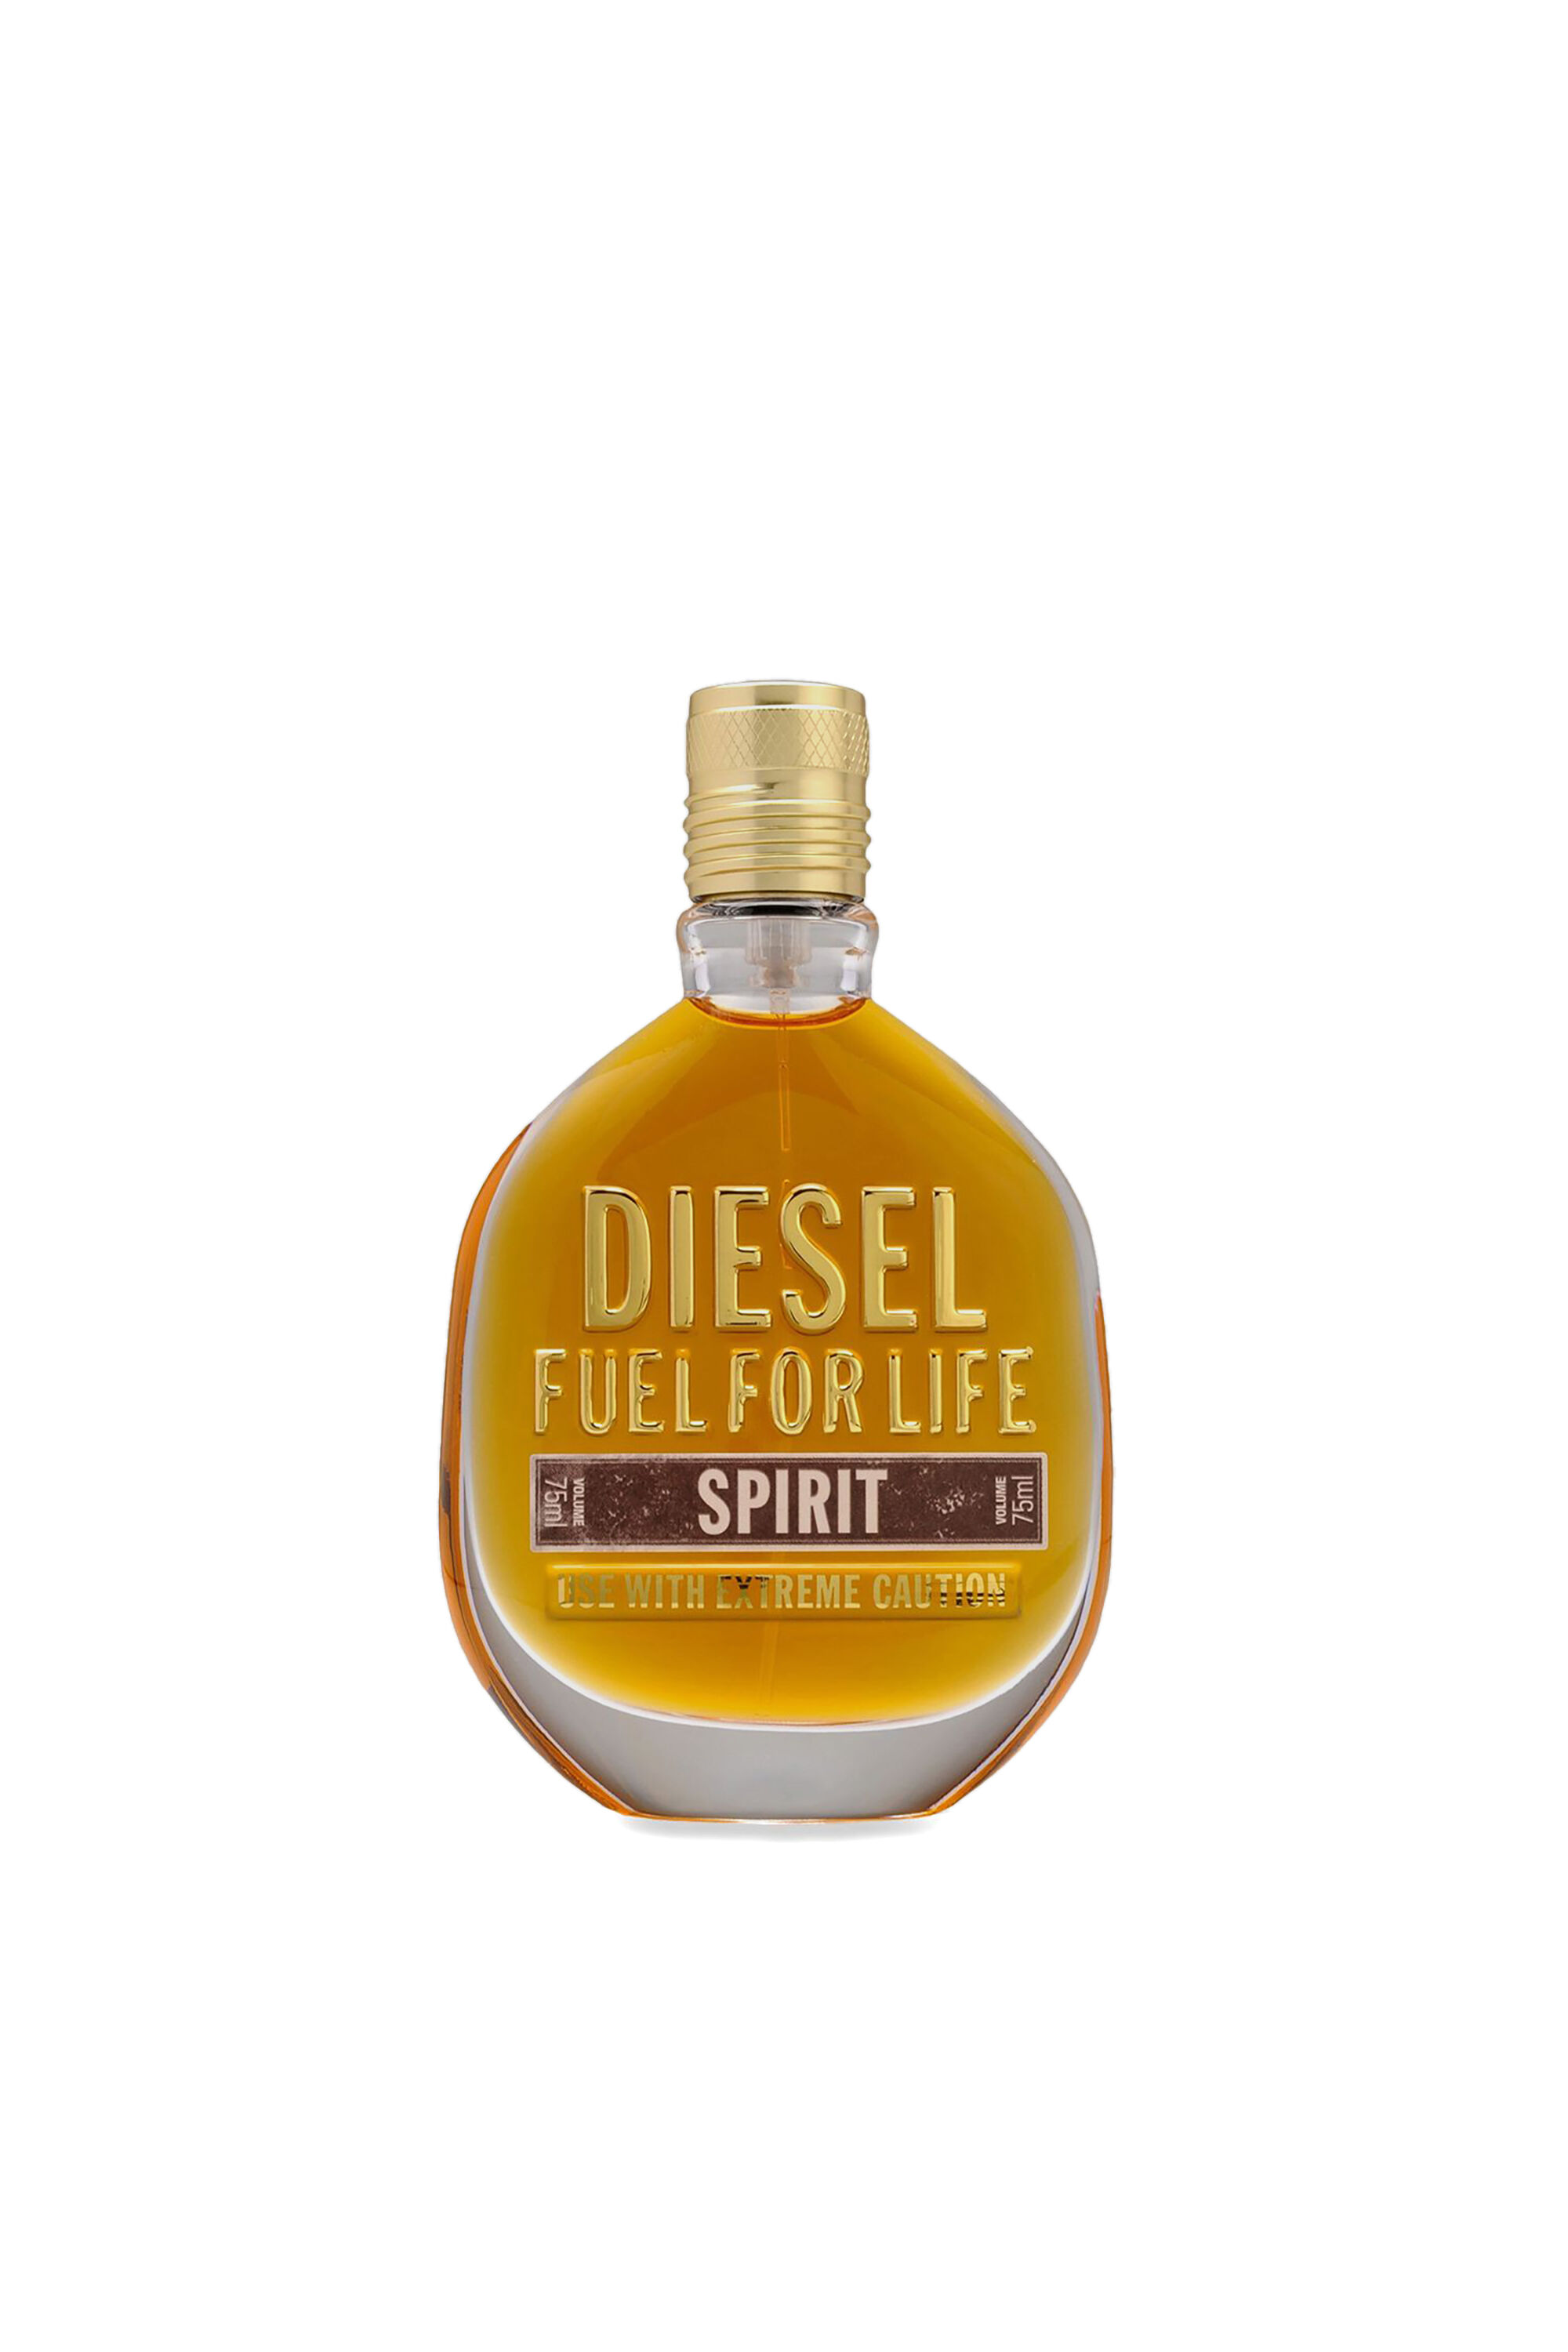 Diesel - FUEL FOR LIFE SPIRIT 75ML, Generisch - Image 2